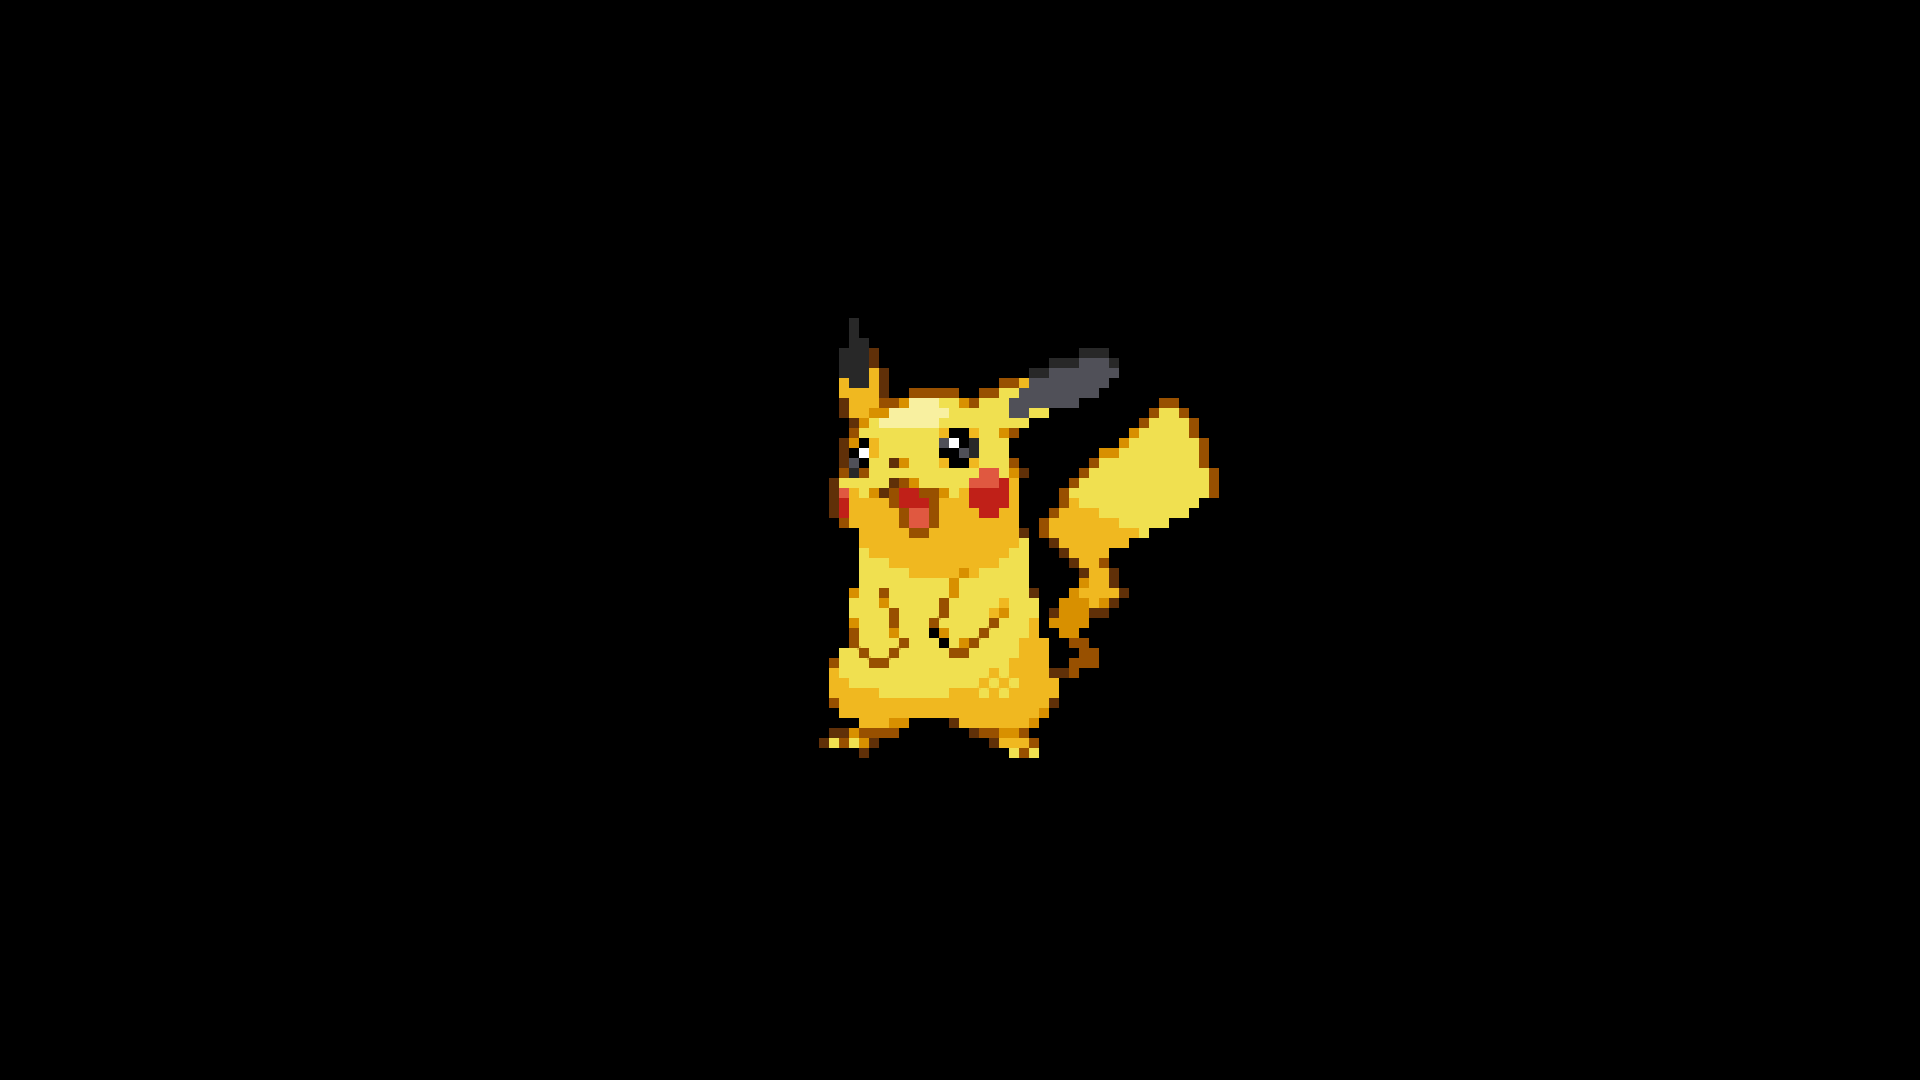 8 Bit Minimalism Pikachu Pokemon Wallpaper Resolution 1920x1080 Id 466107 Wallha Com